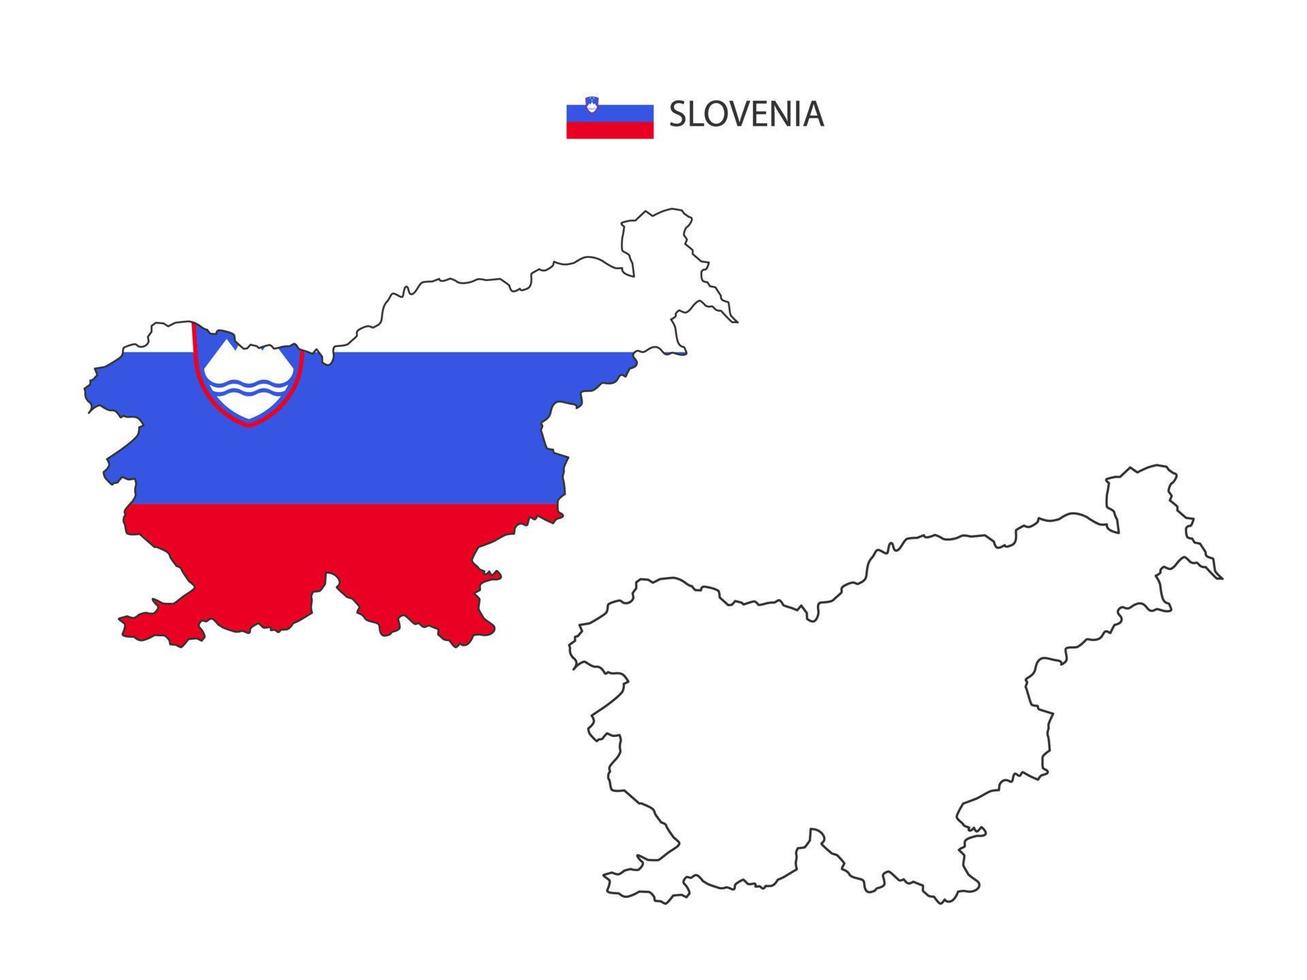 slowenien karte stadtvektor geteilt durch umrisseinfachheitsstil. haben 2 Versionen, eine schwarze Version mit dünner Linie und eine Version in der Farbe der Landesflagge. beide Karten waren auf dem weißen Hintergrund. vektor